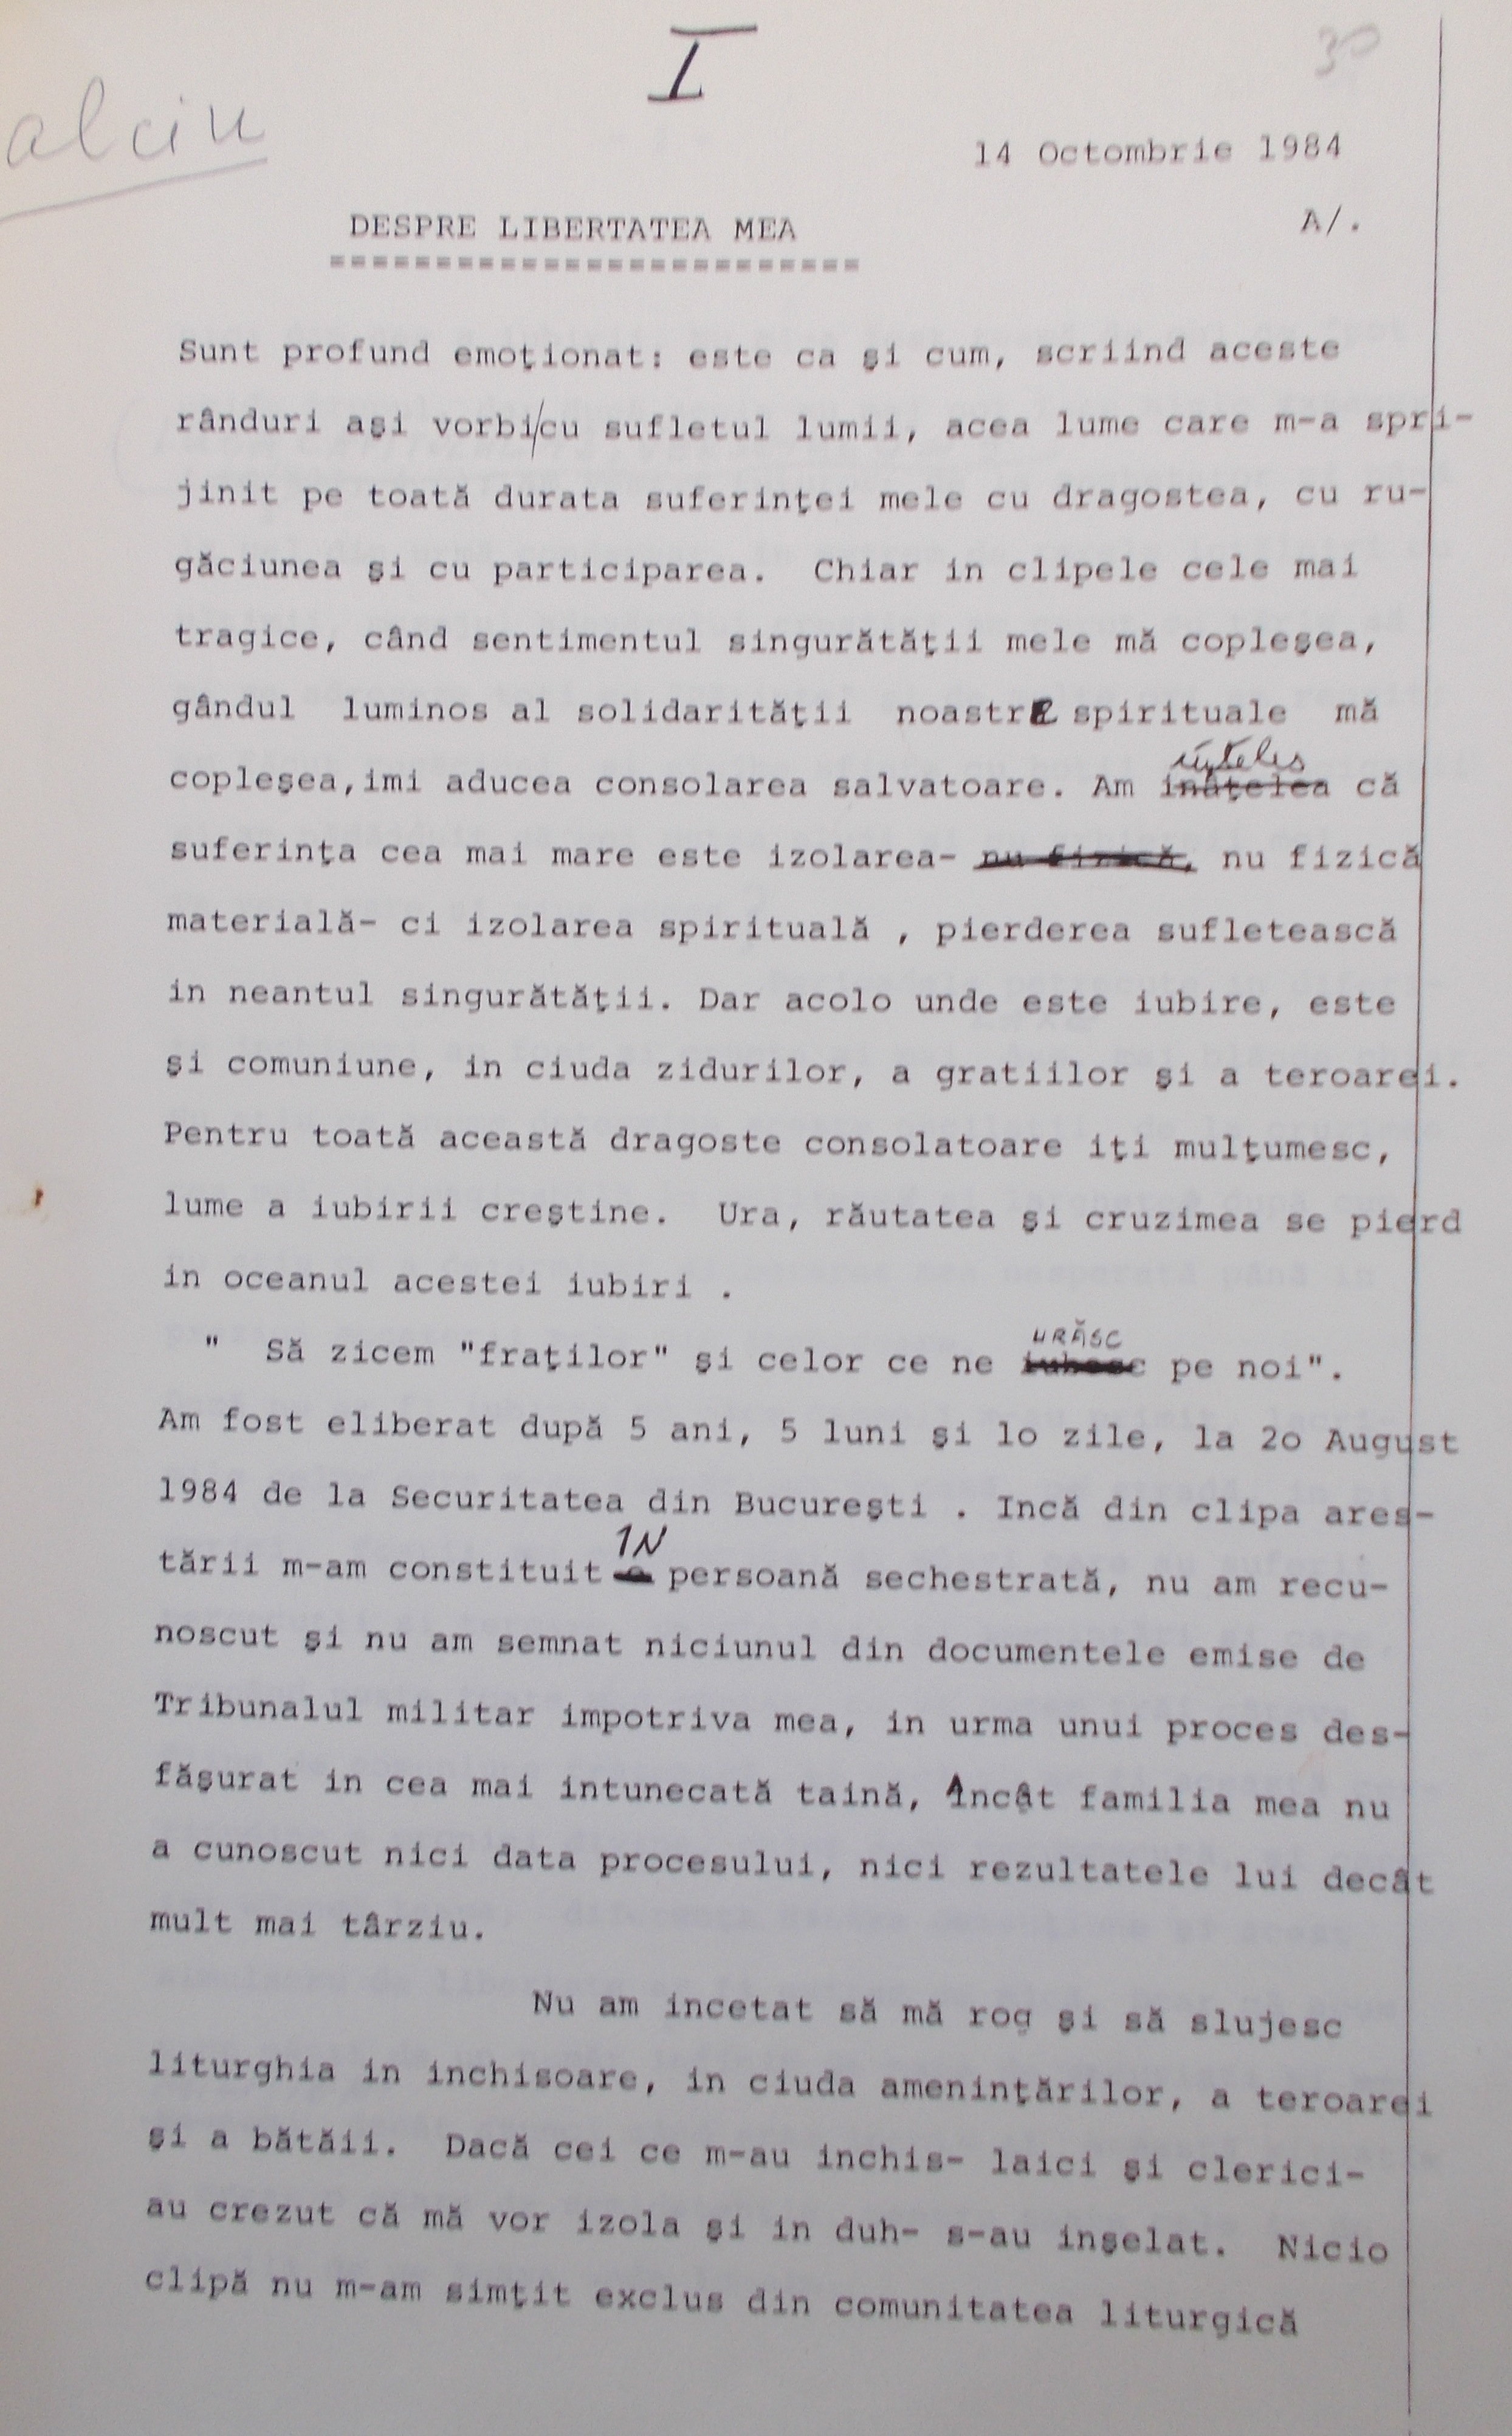 Prima filă a scrisorii trimise către Radio Europa Liberă de către Calciu-Dumitreasa în octombrie 1984